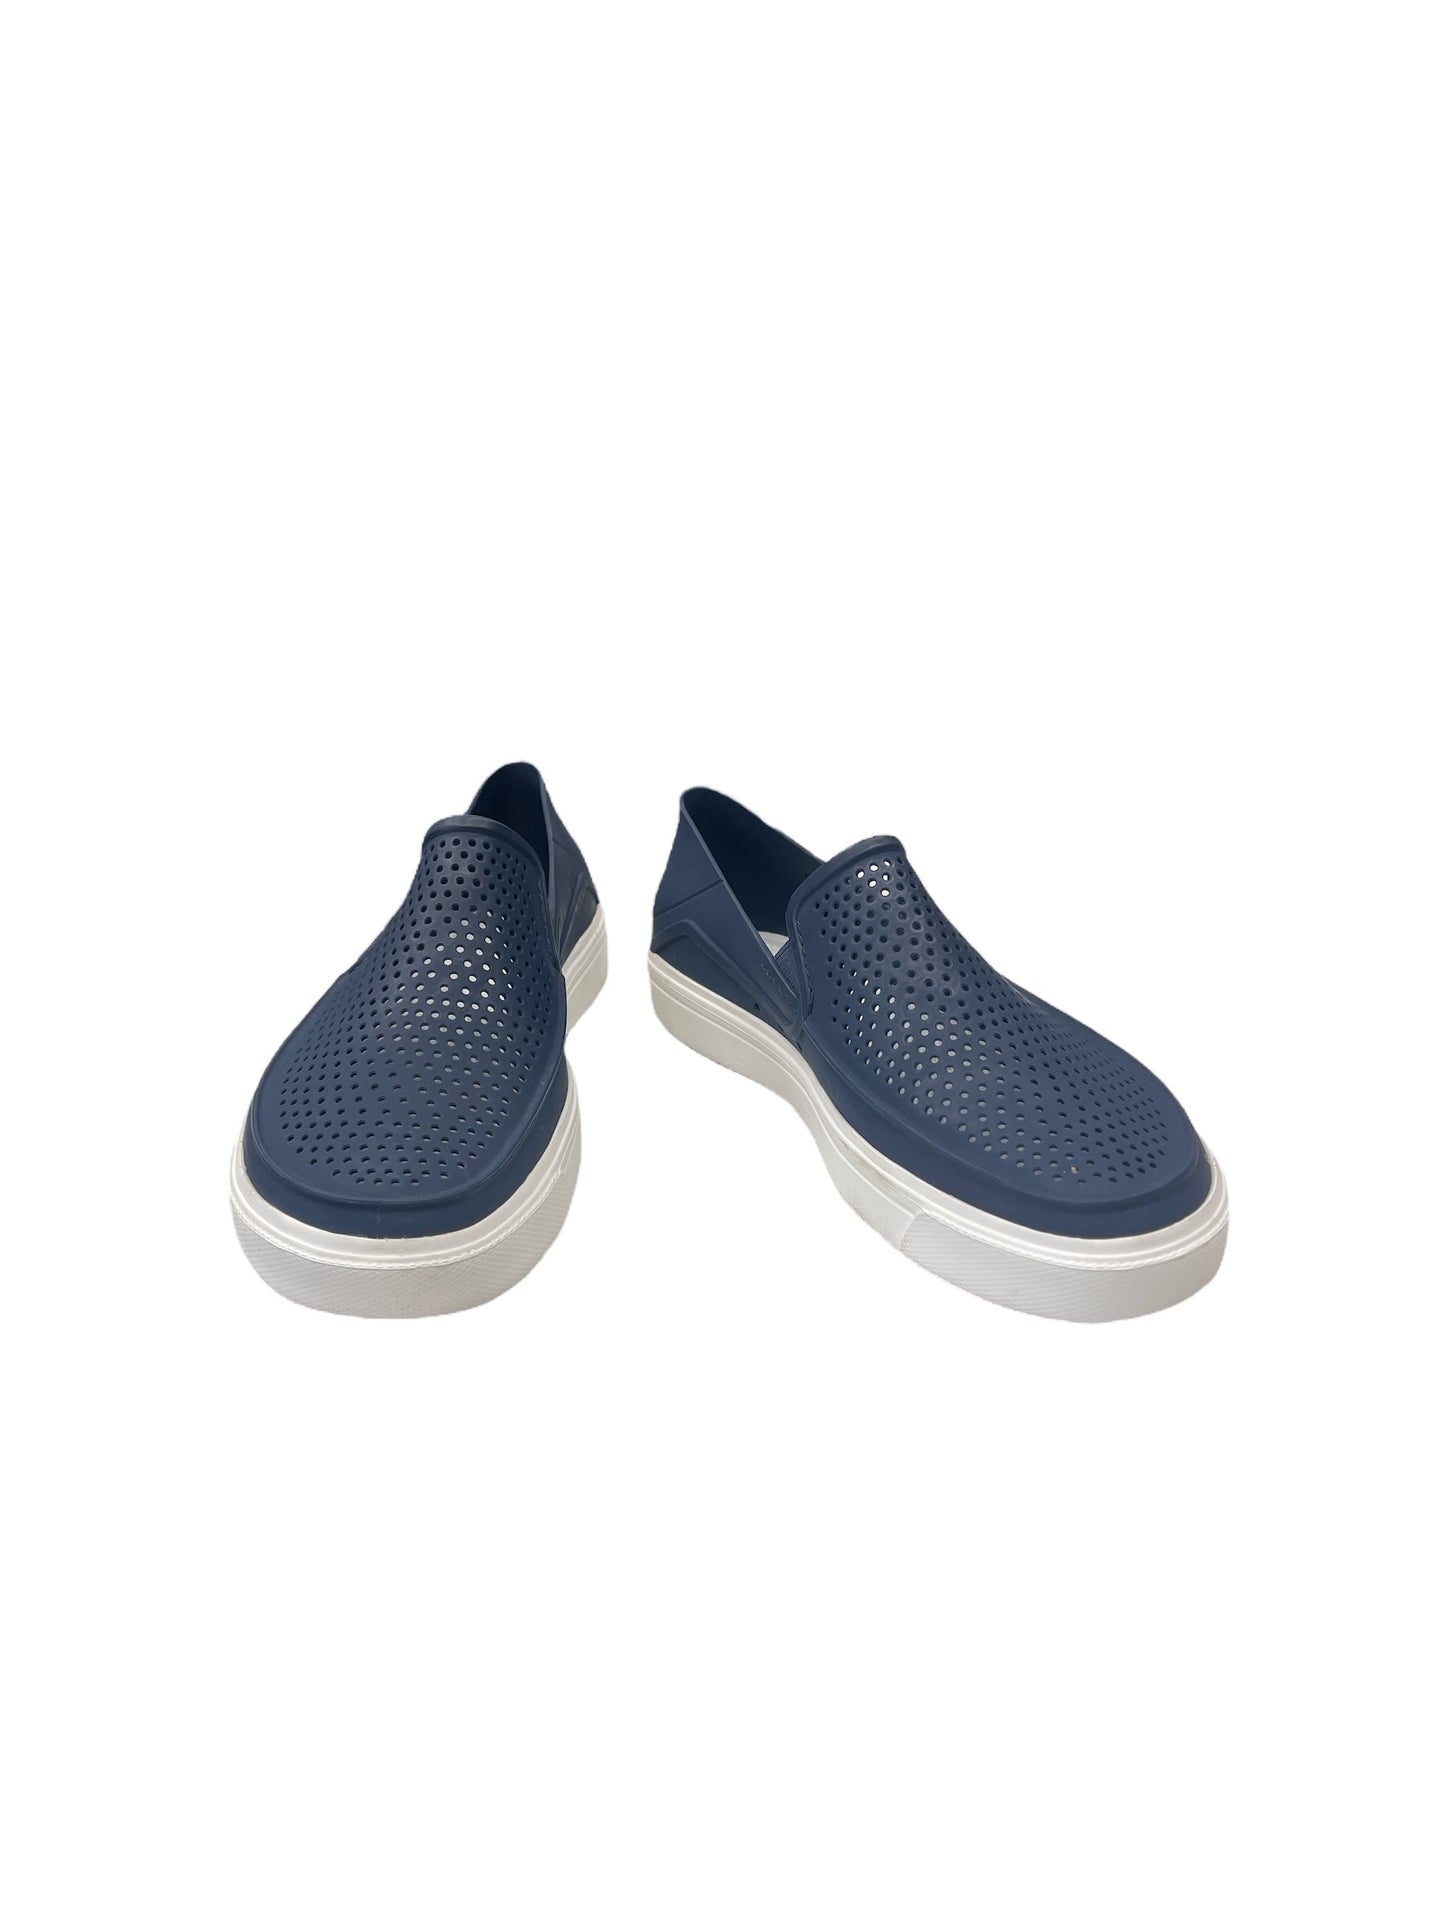 Blue Shoes Flats Crocs, Size 7